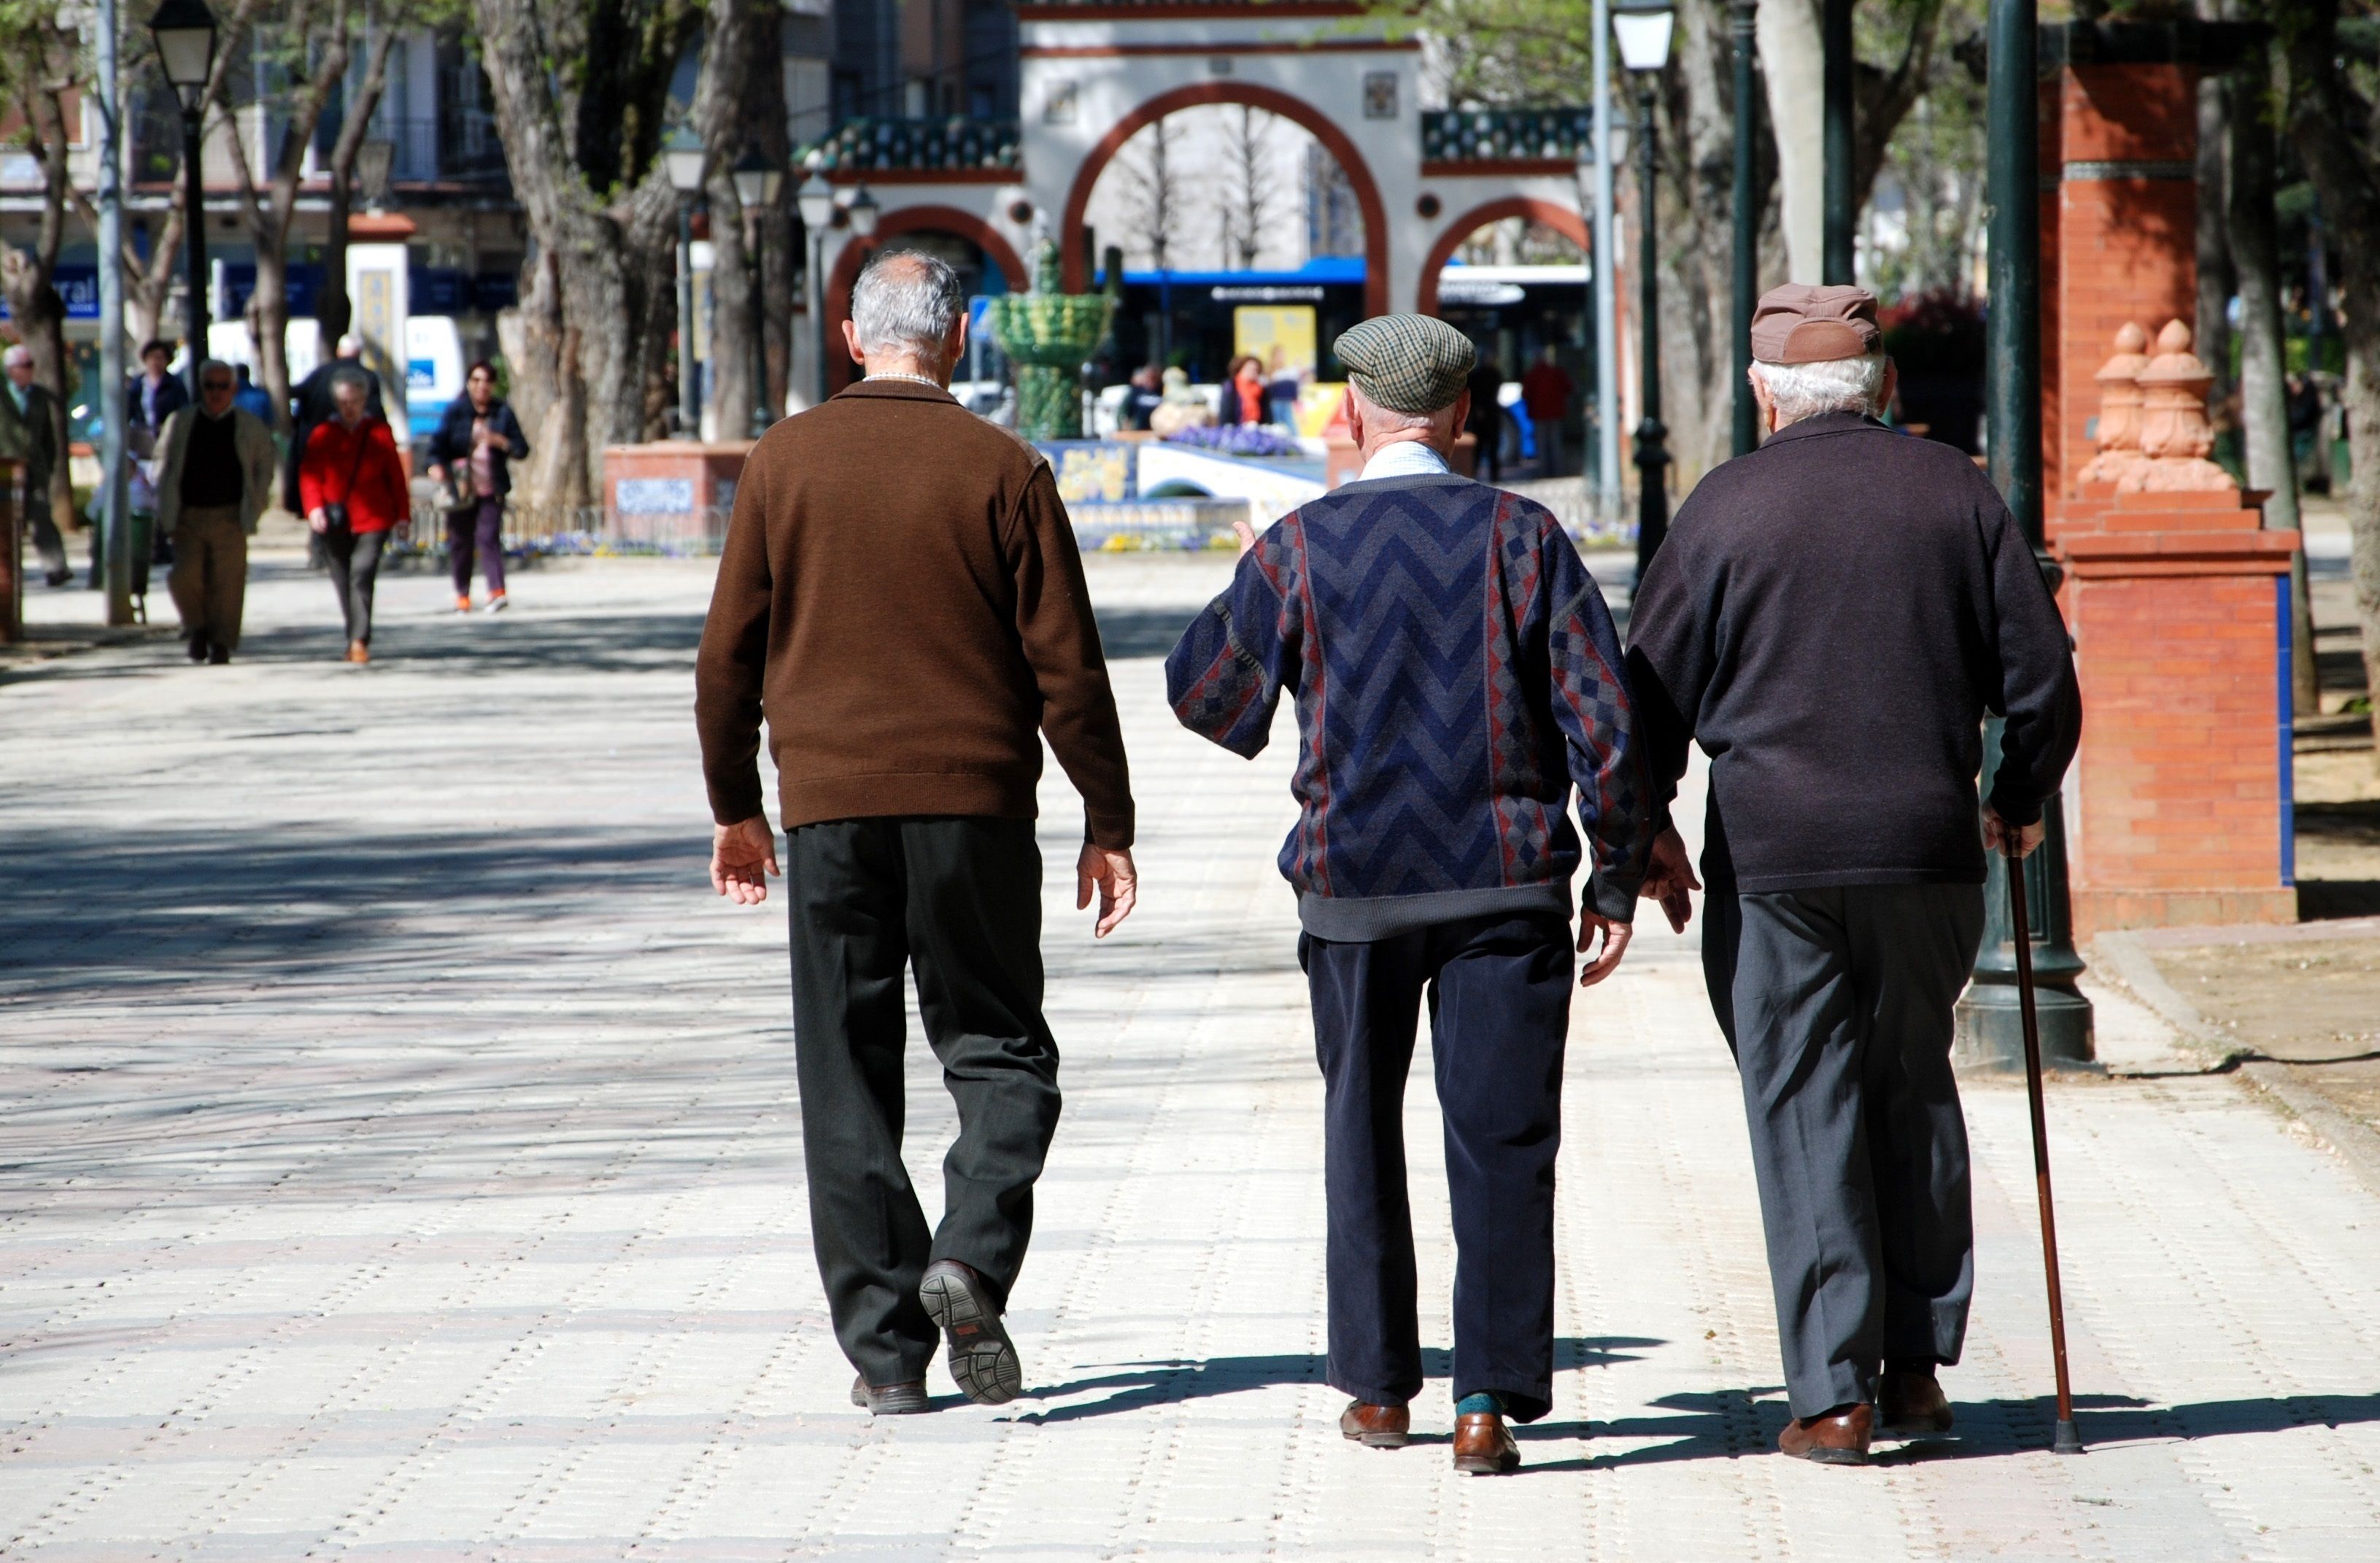 UGT Baleares reclama una Ley de personas mayores: "Está en los cajones de los distintos partidos"